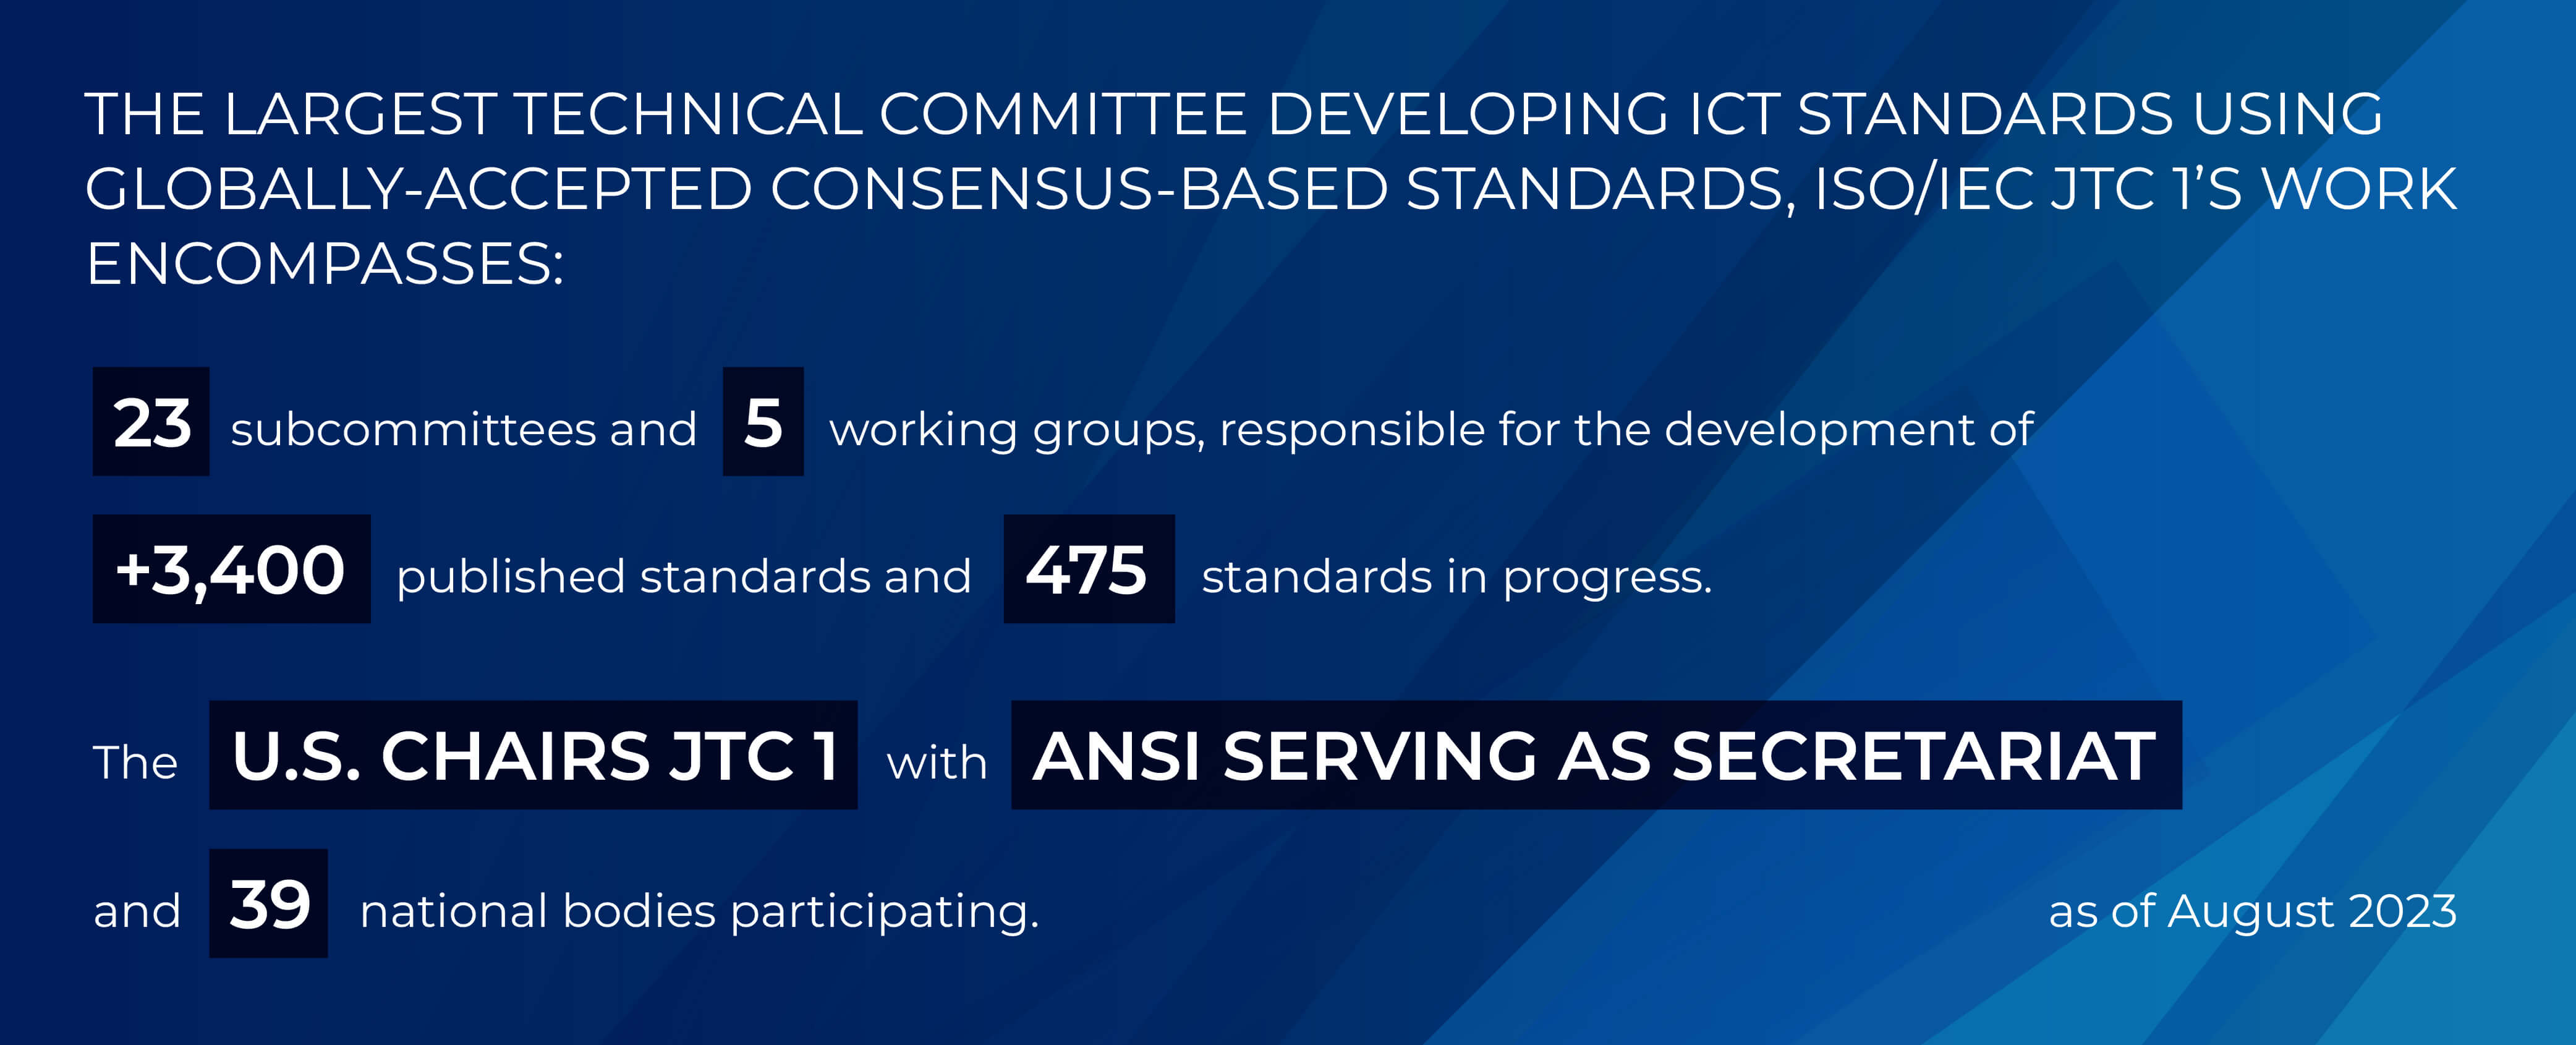 Infographic showing U.S. ISO-IEC JTC 1 activities.